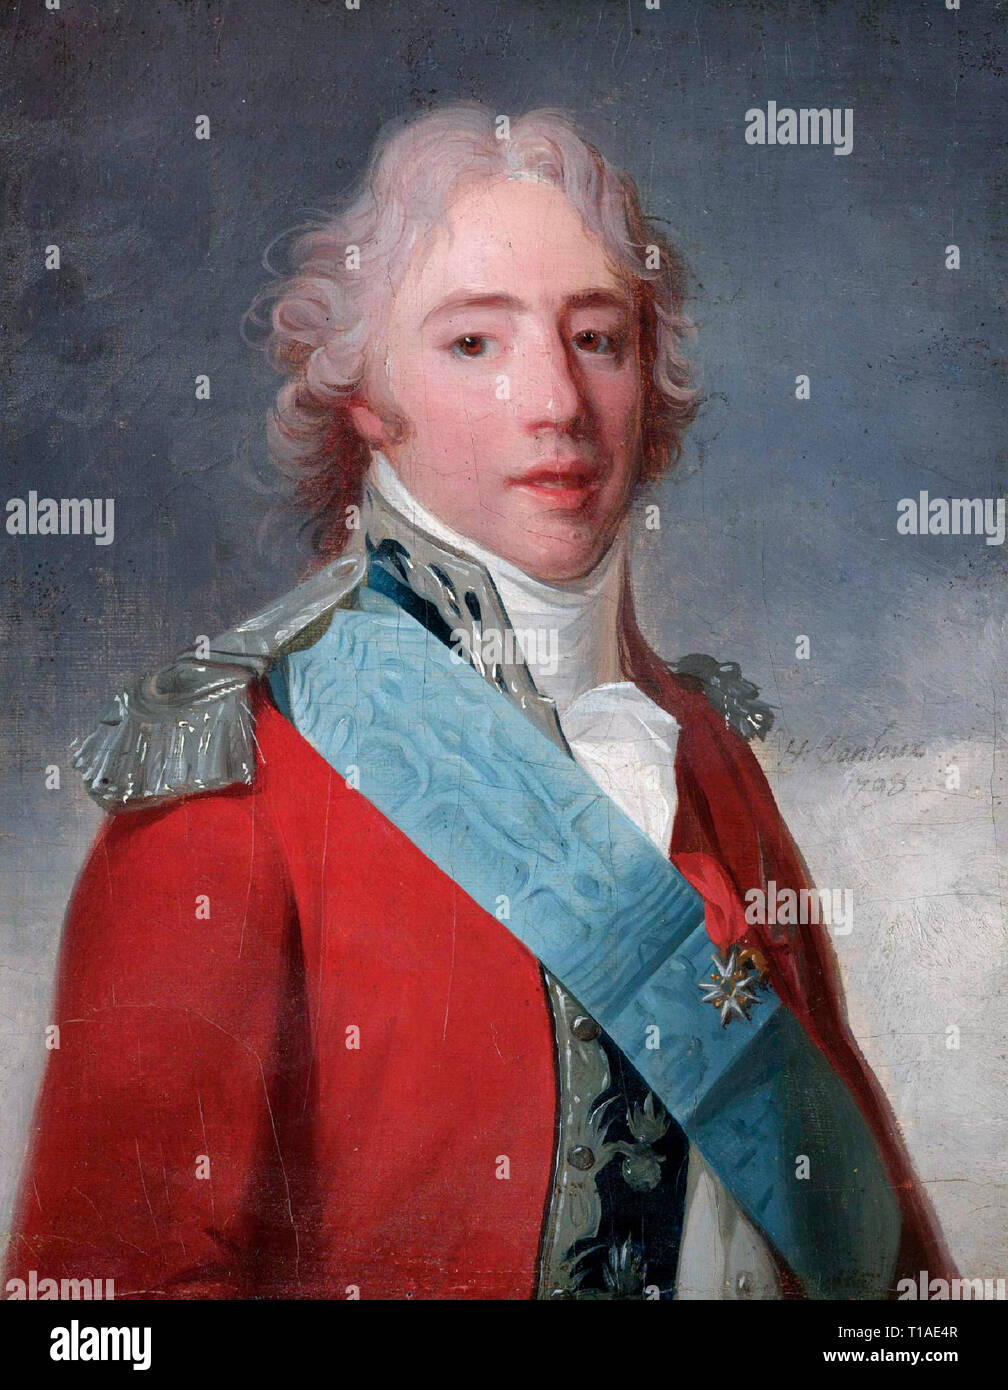 Charles Philippe de France, comte d'Artois (1757-1836) - Comte d'Artois, later Charles X of France, by Henri Pierre Danloux. 1798 Stock Photo